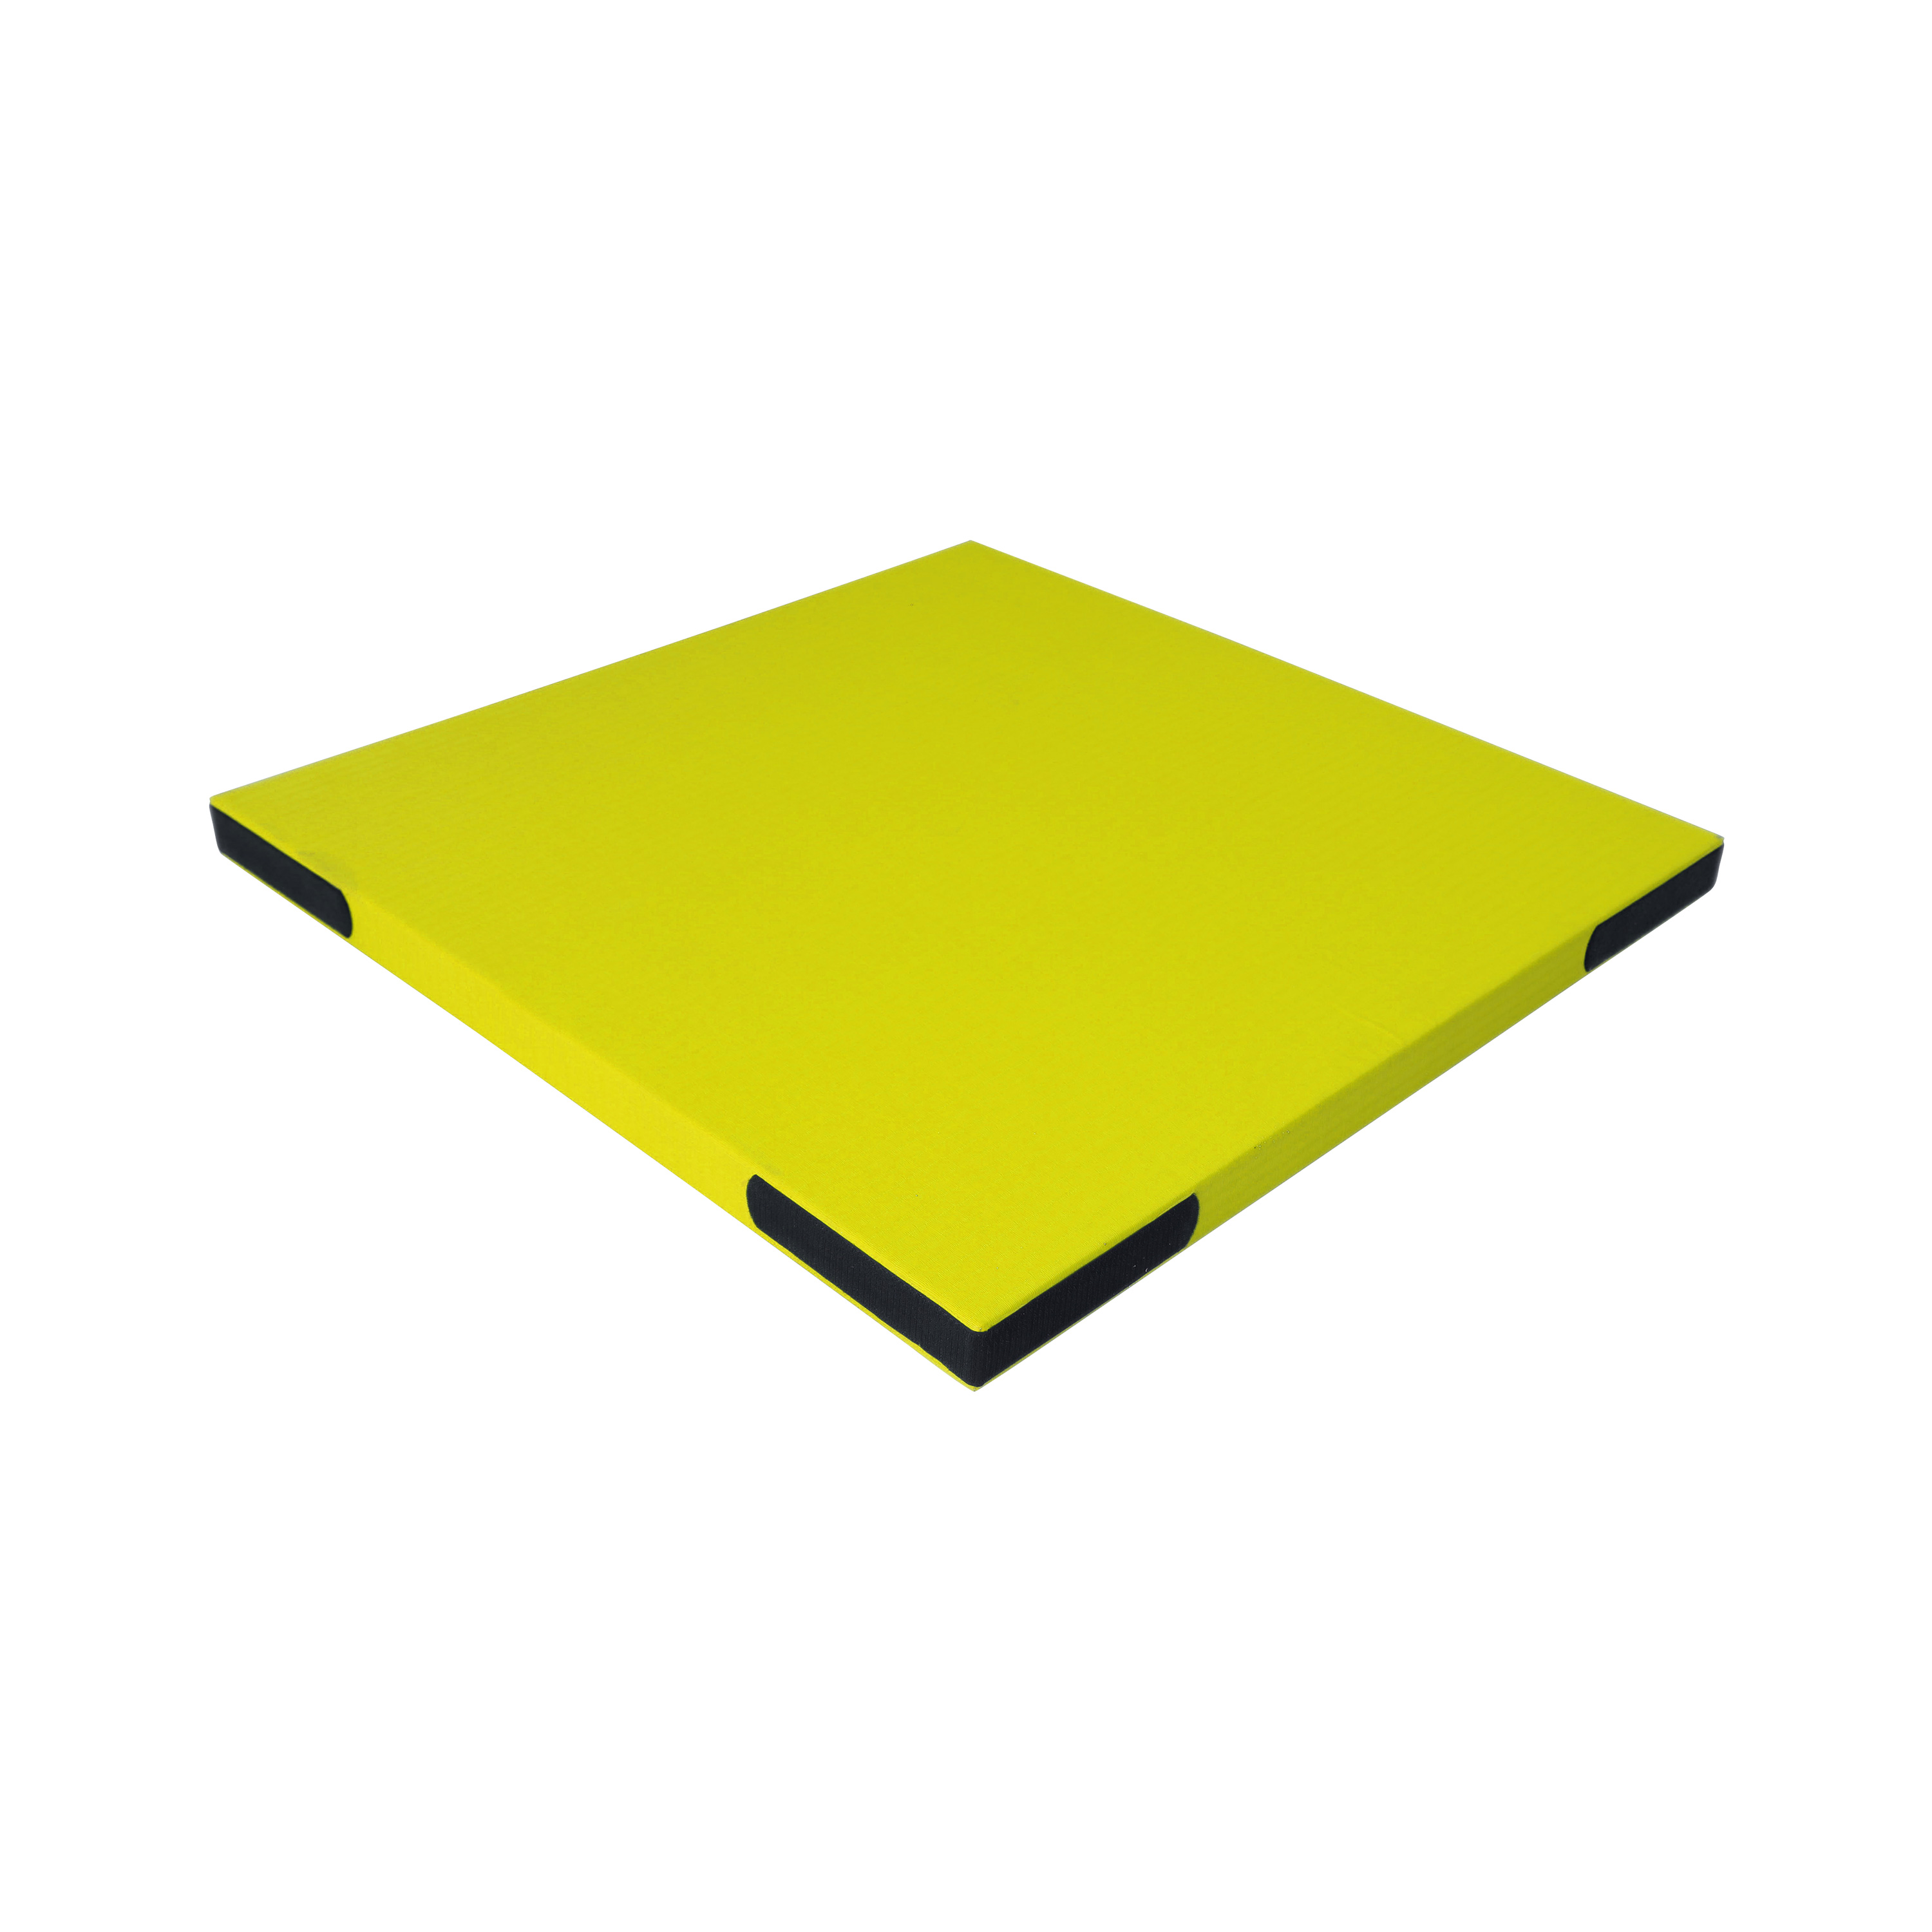 Fallschutzmatte 'Light' gelb mit Klett, 100 x 100 cm, 3,4 kg